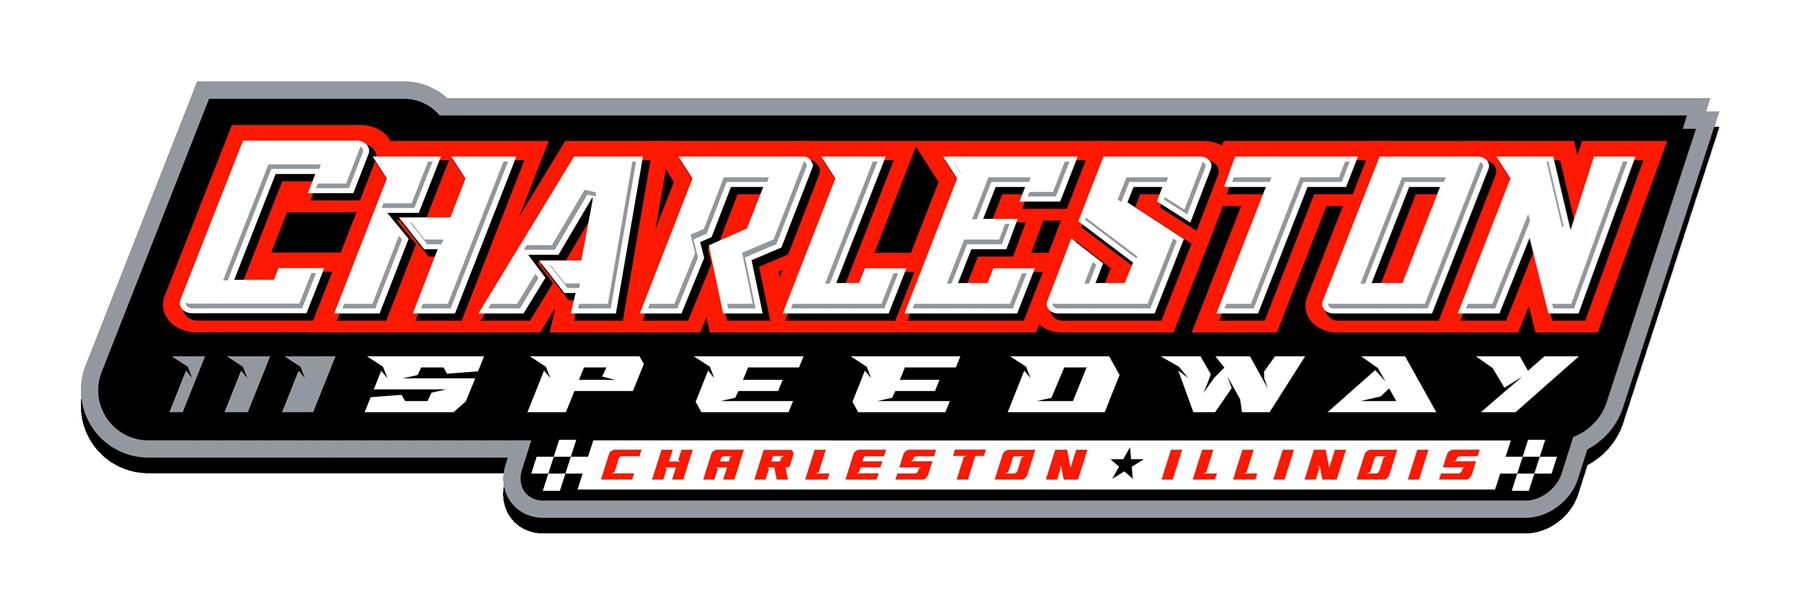 4/15/2023 - Charleston Speedway